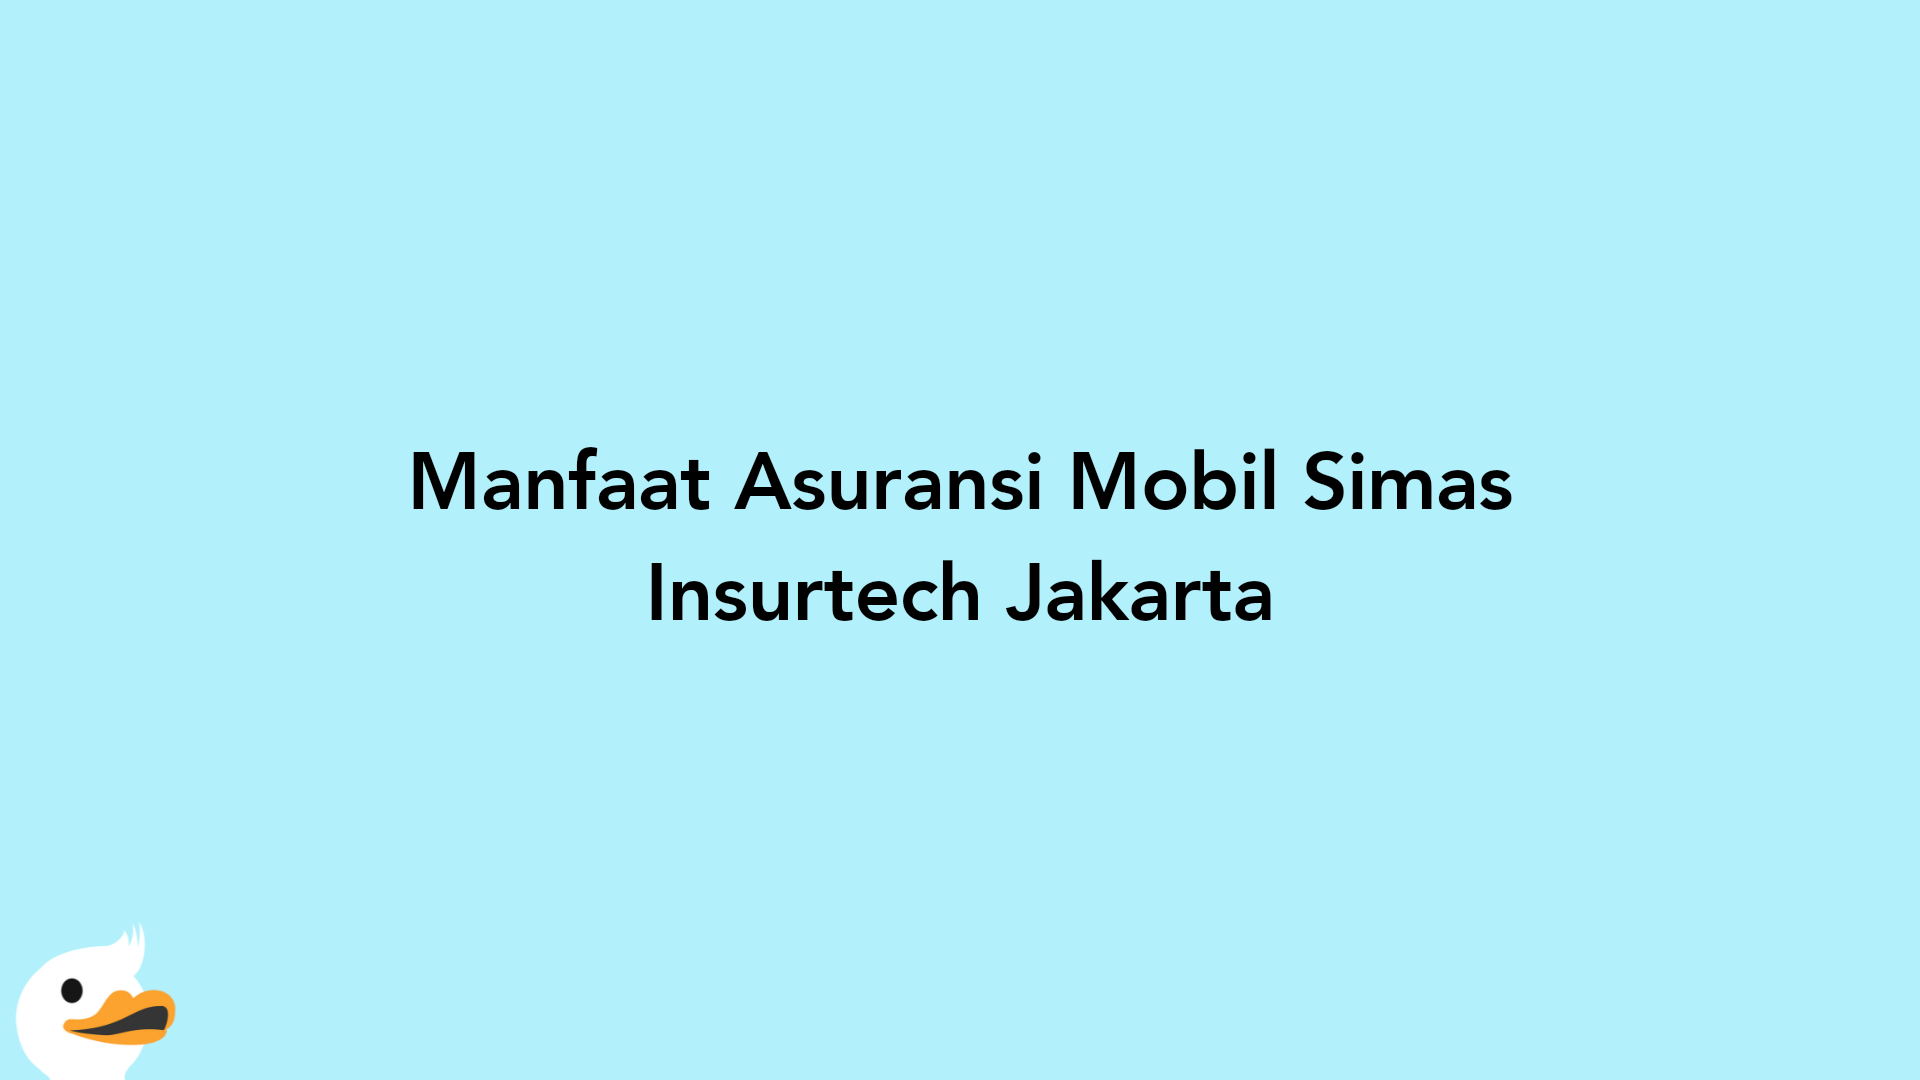 Manfaat Asuransi Mobil Simas Insurtech Jakarta